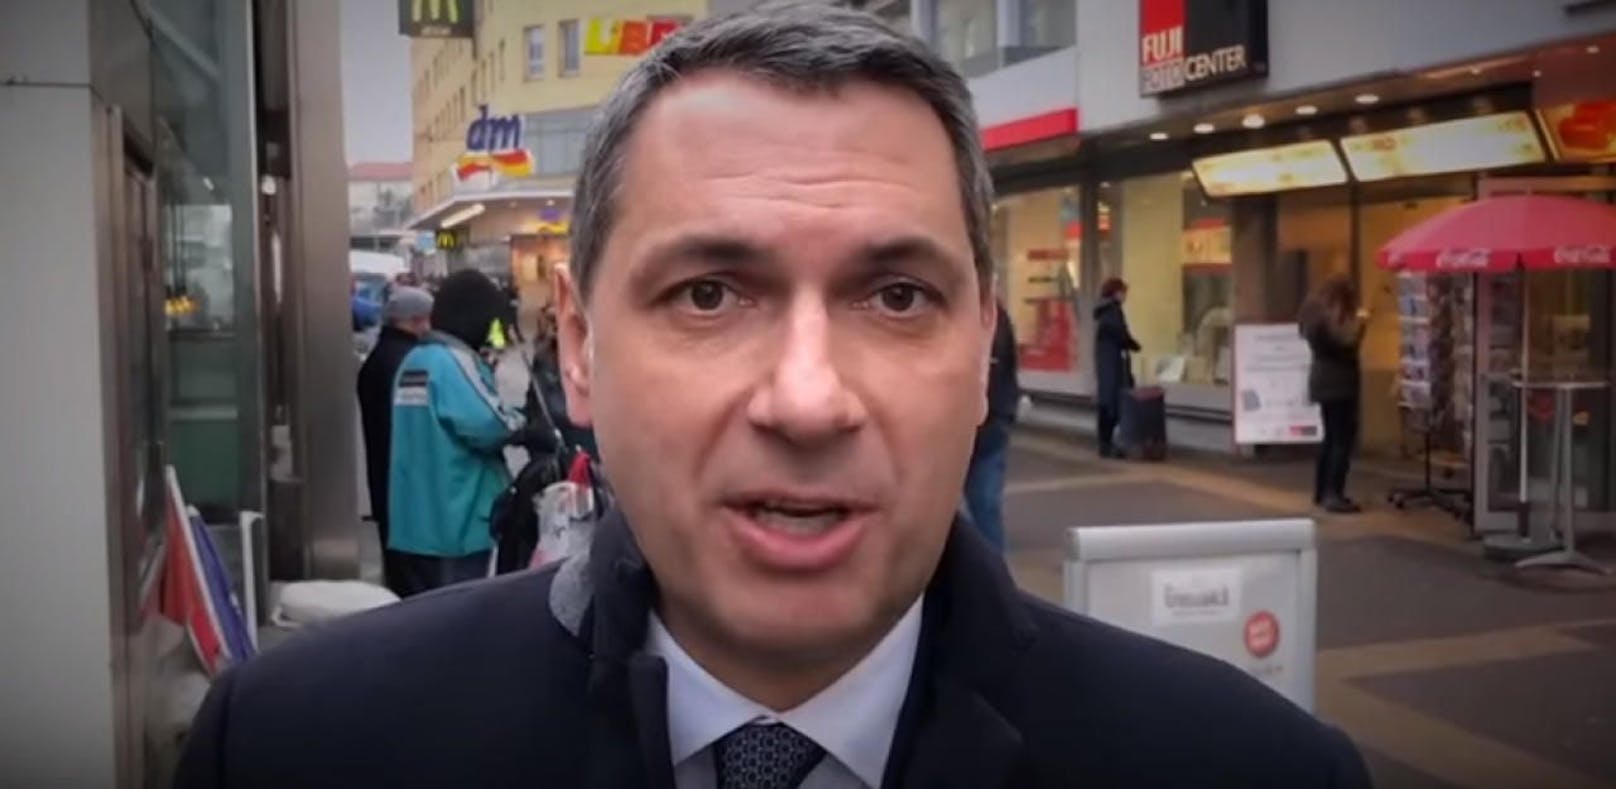 Ungarn-Minister "wollte keinen Wiener beleidigen"